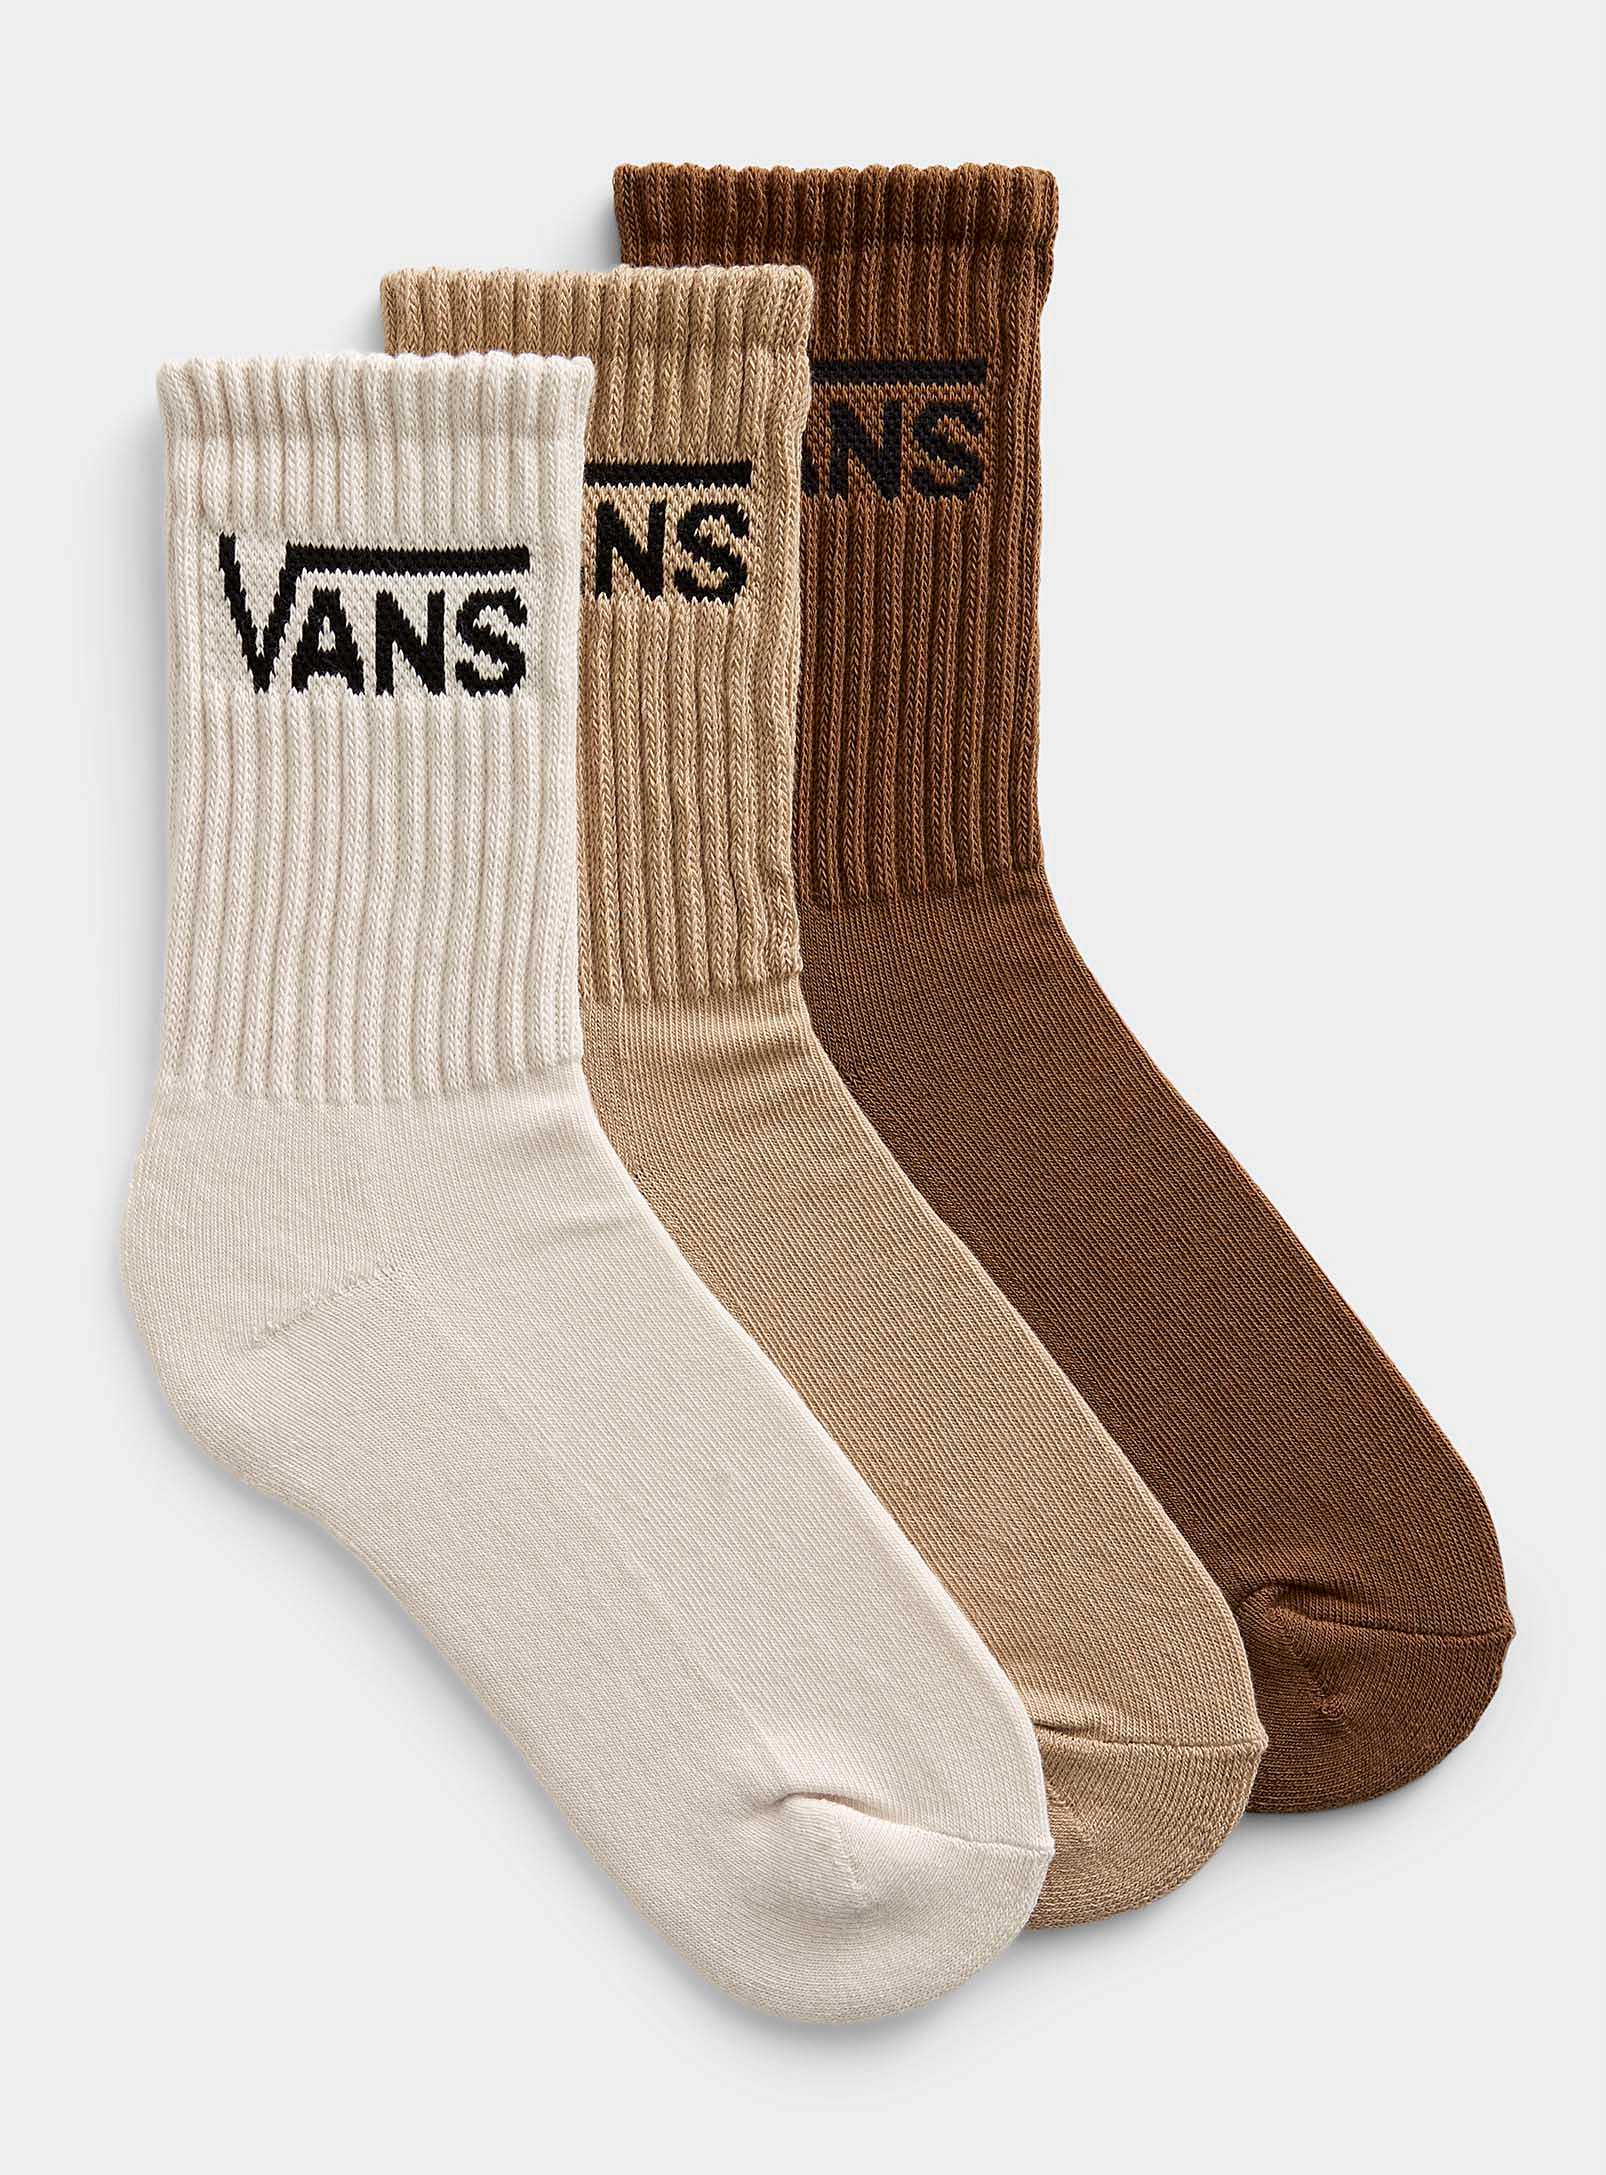 Vans Signature Ribbed Socks Set Of 3 In Multi